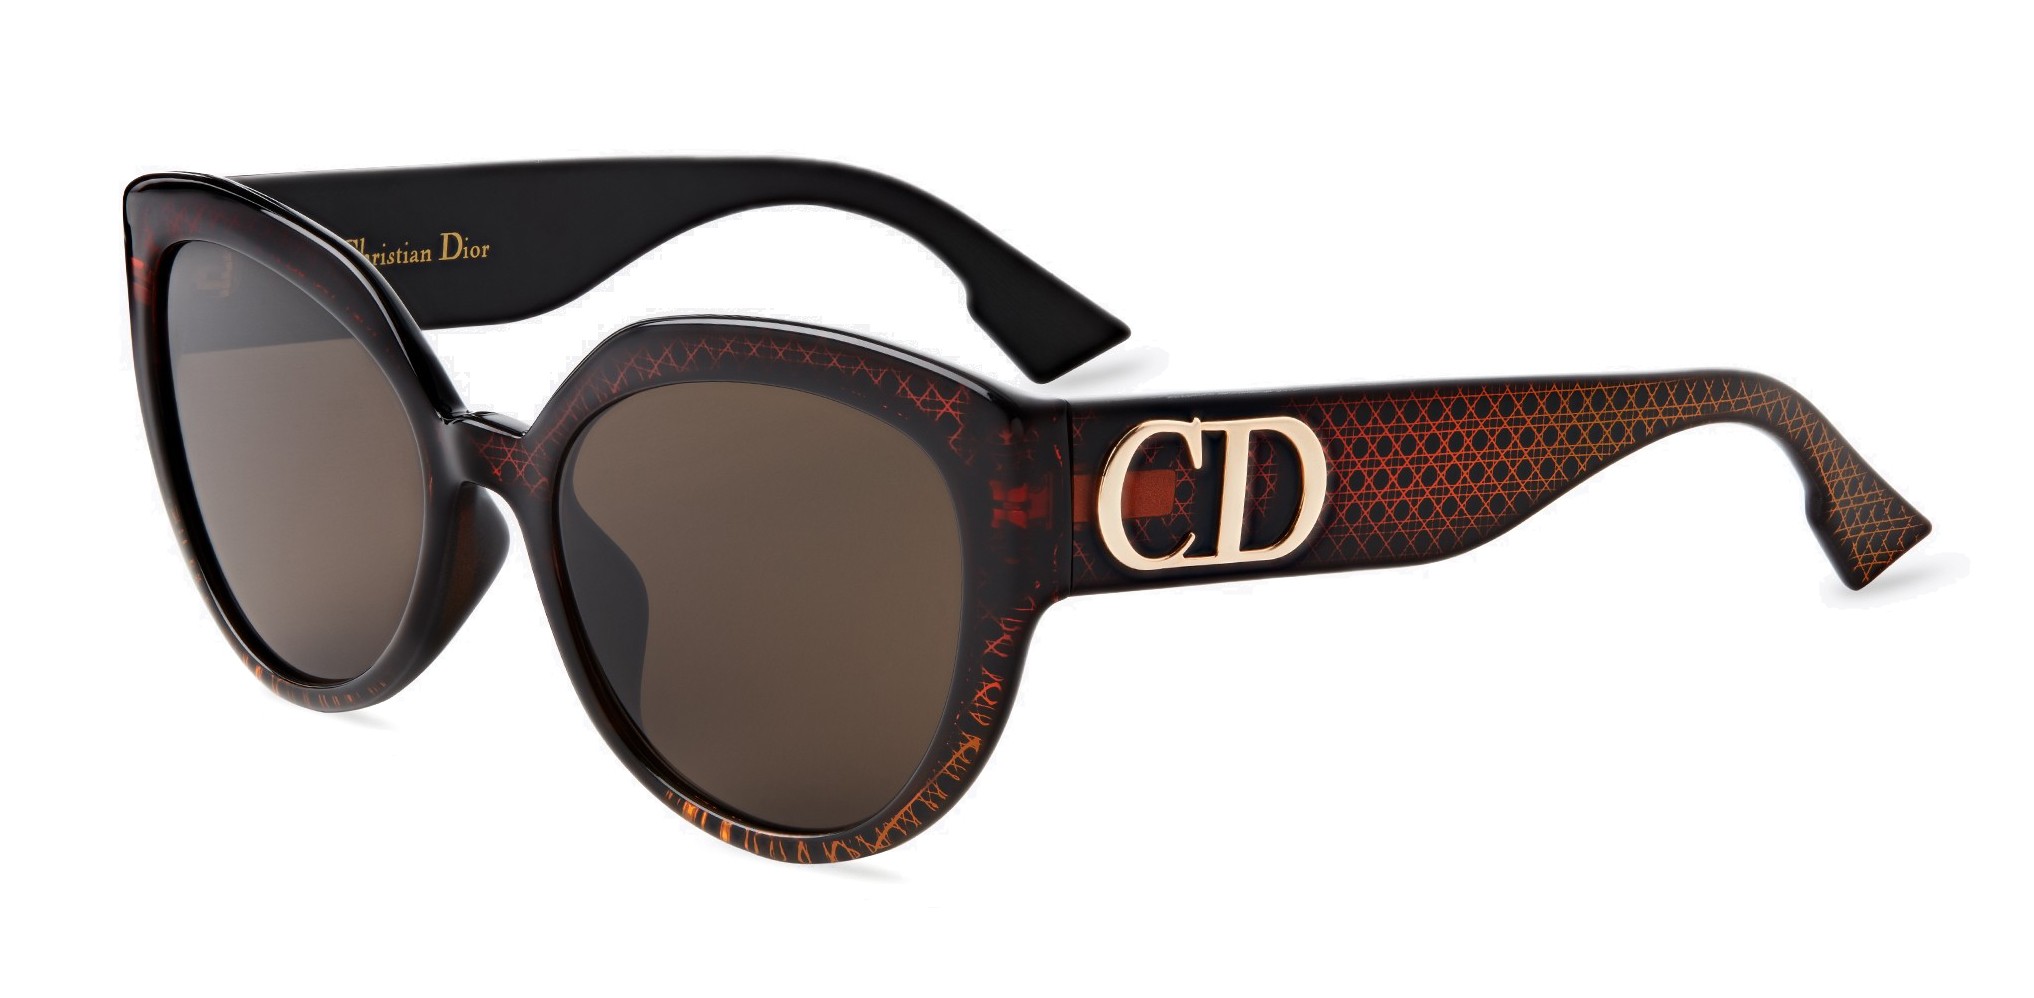 Dior - Sunglasses - DDiorF - Brown 